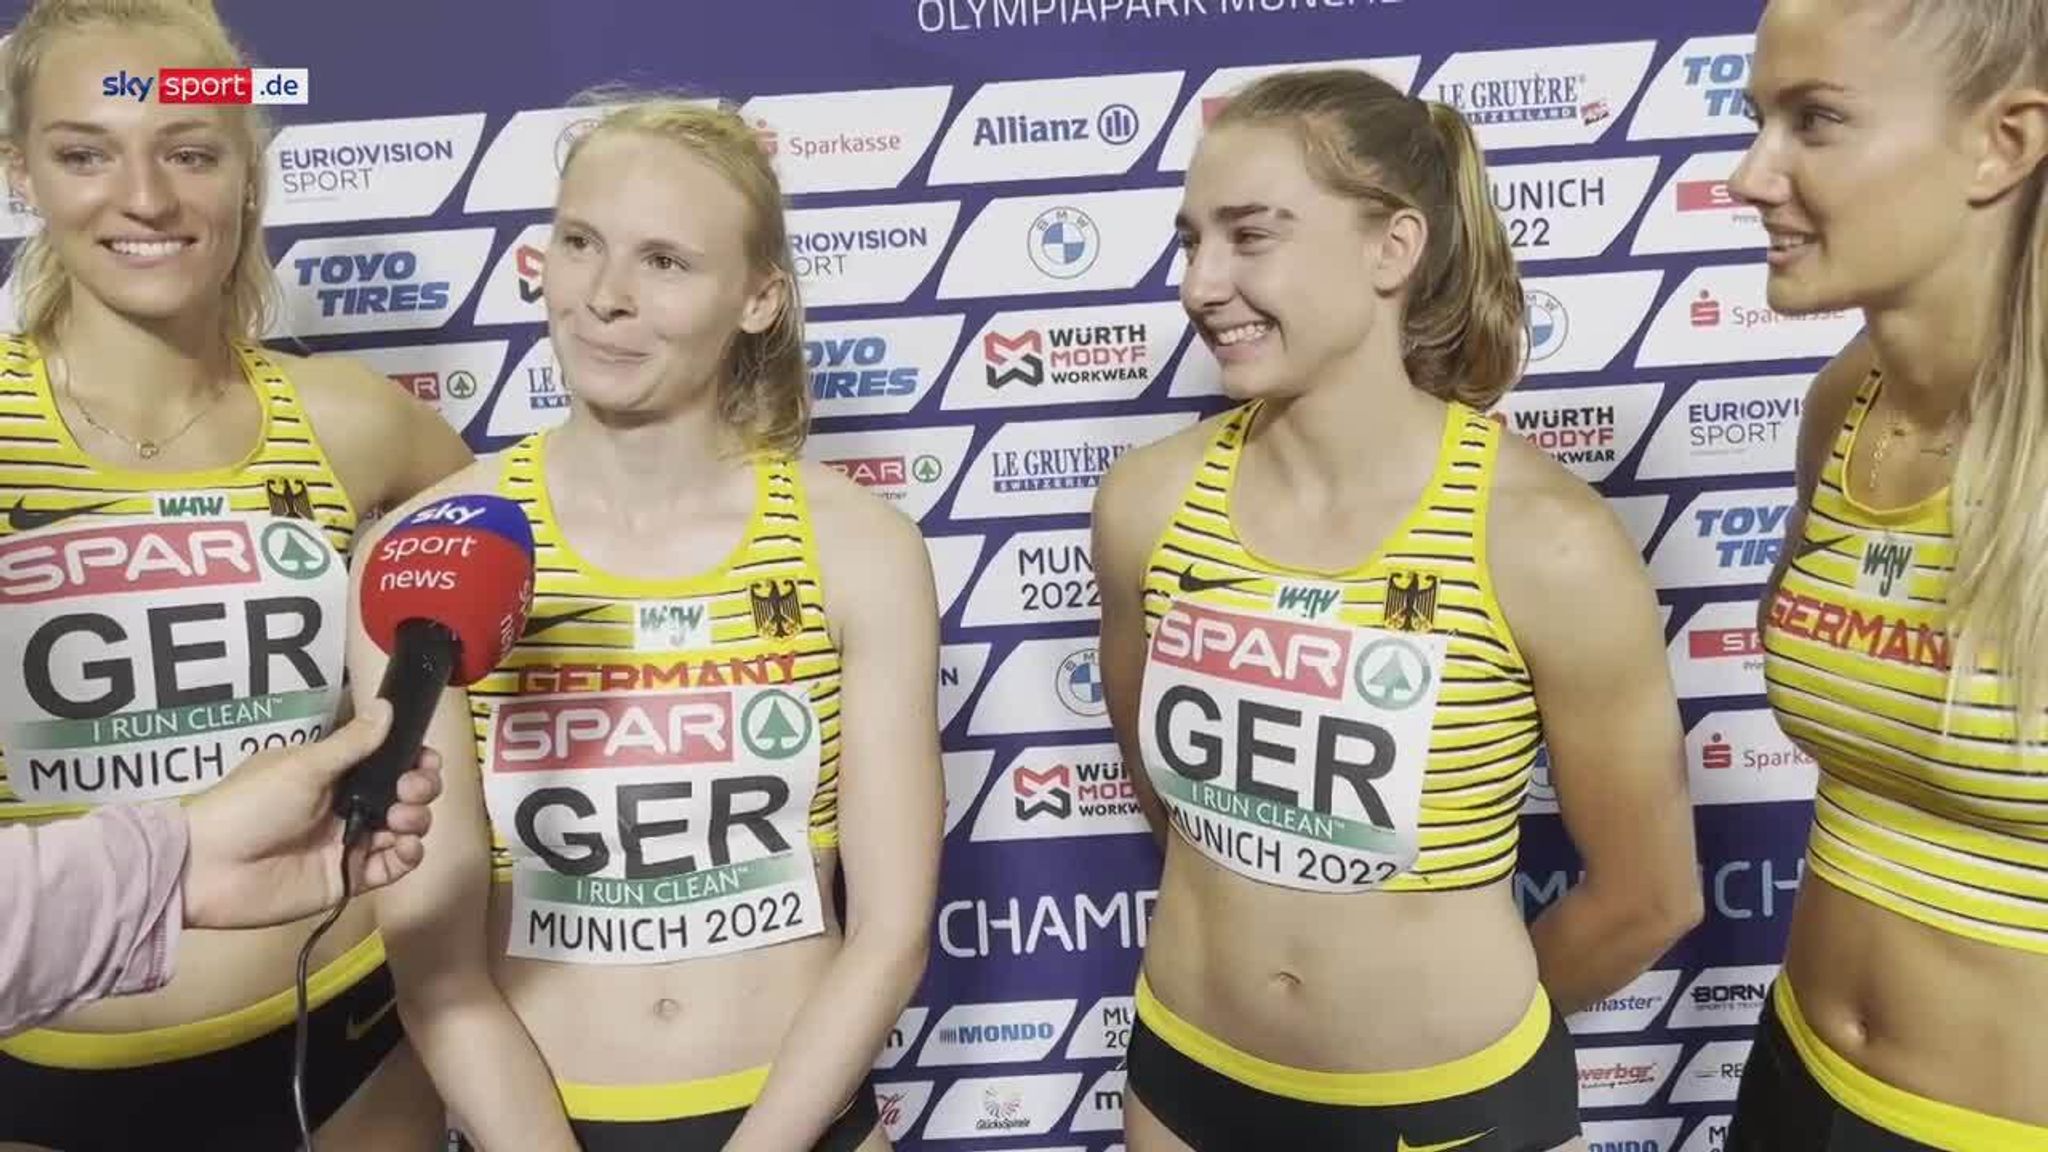 Leichtathletik Die 400-Meter-Frauenstaffel steht im EM-Finale in München Leichtathletik News Sky Sport